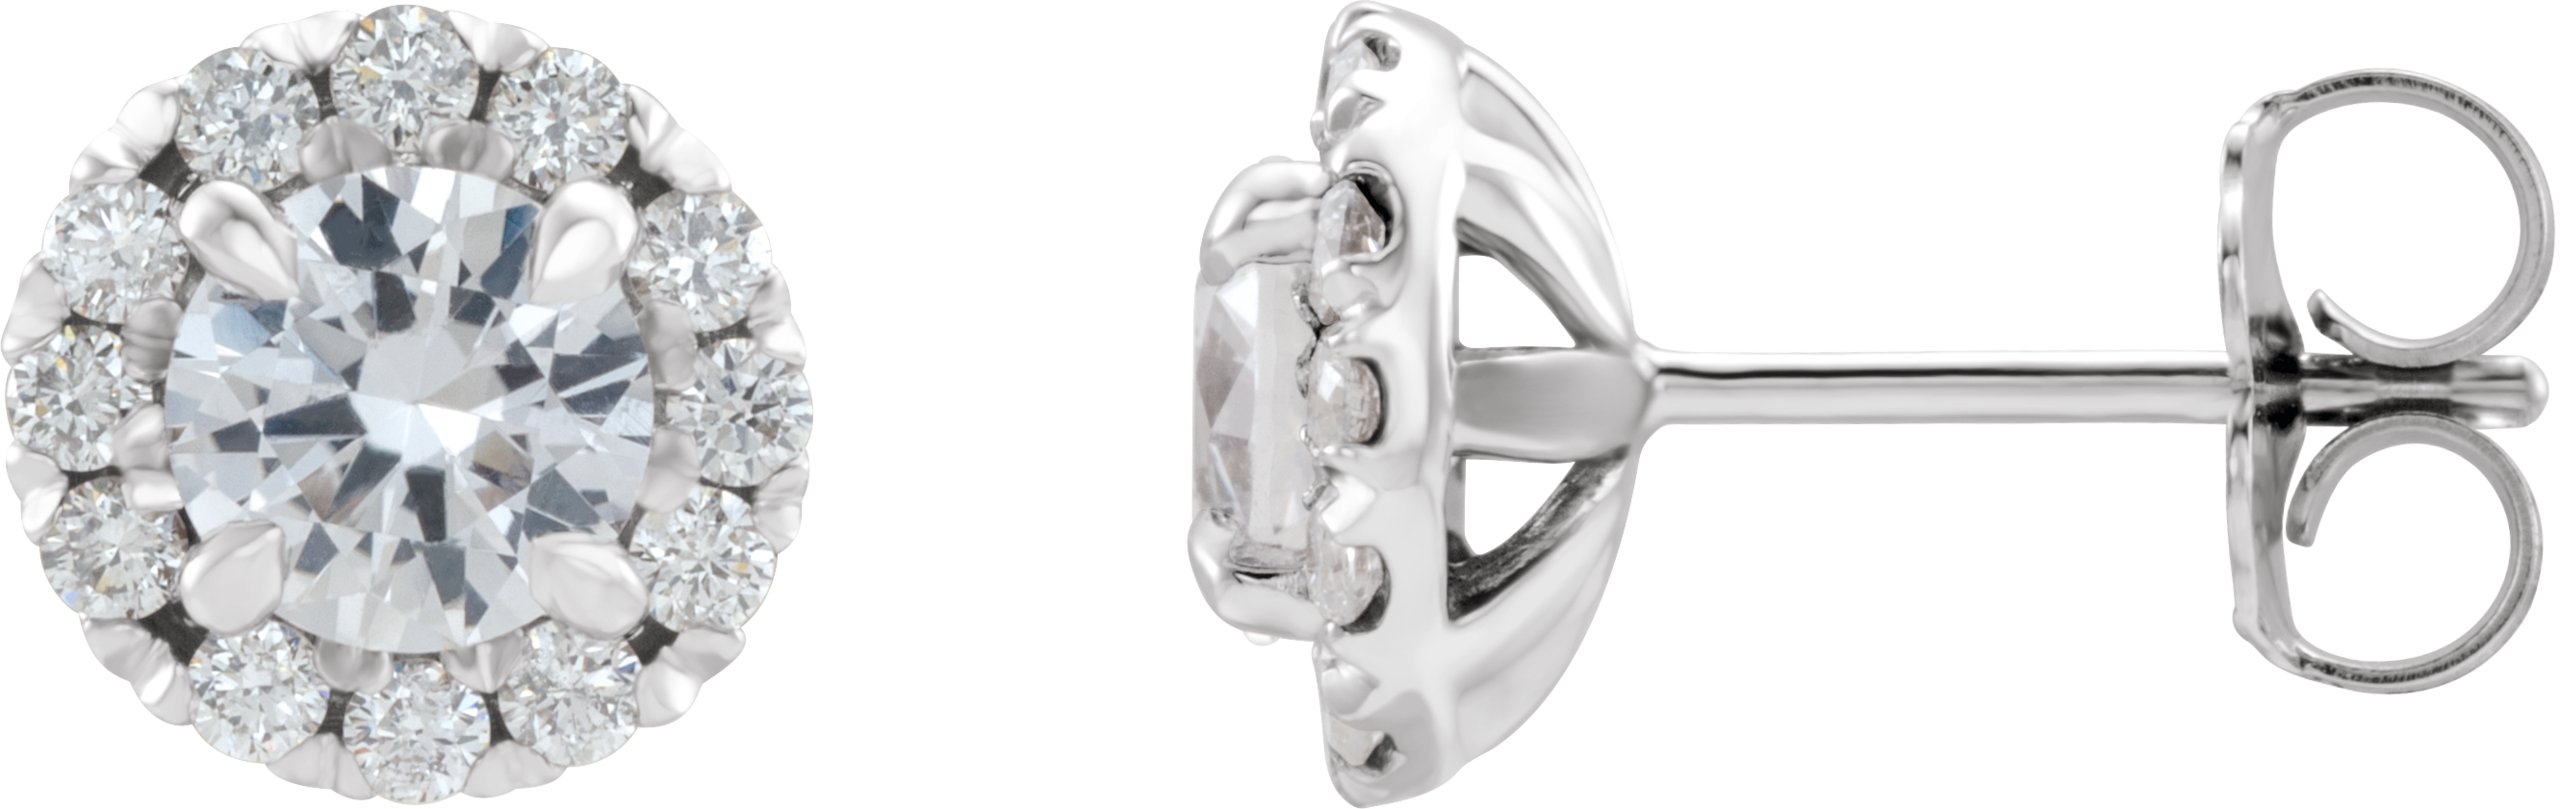 Sterling Silver 2 CTW Diamond Halo Style Earrings Ref 16042530